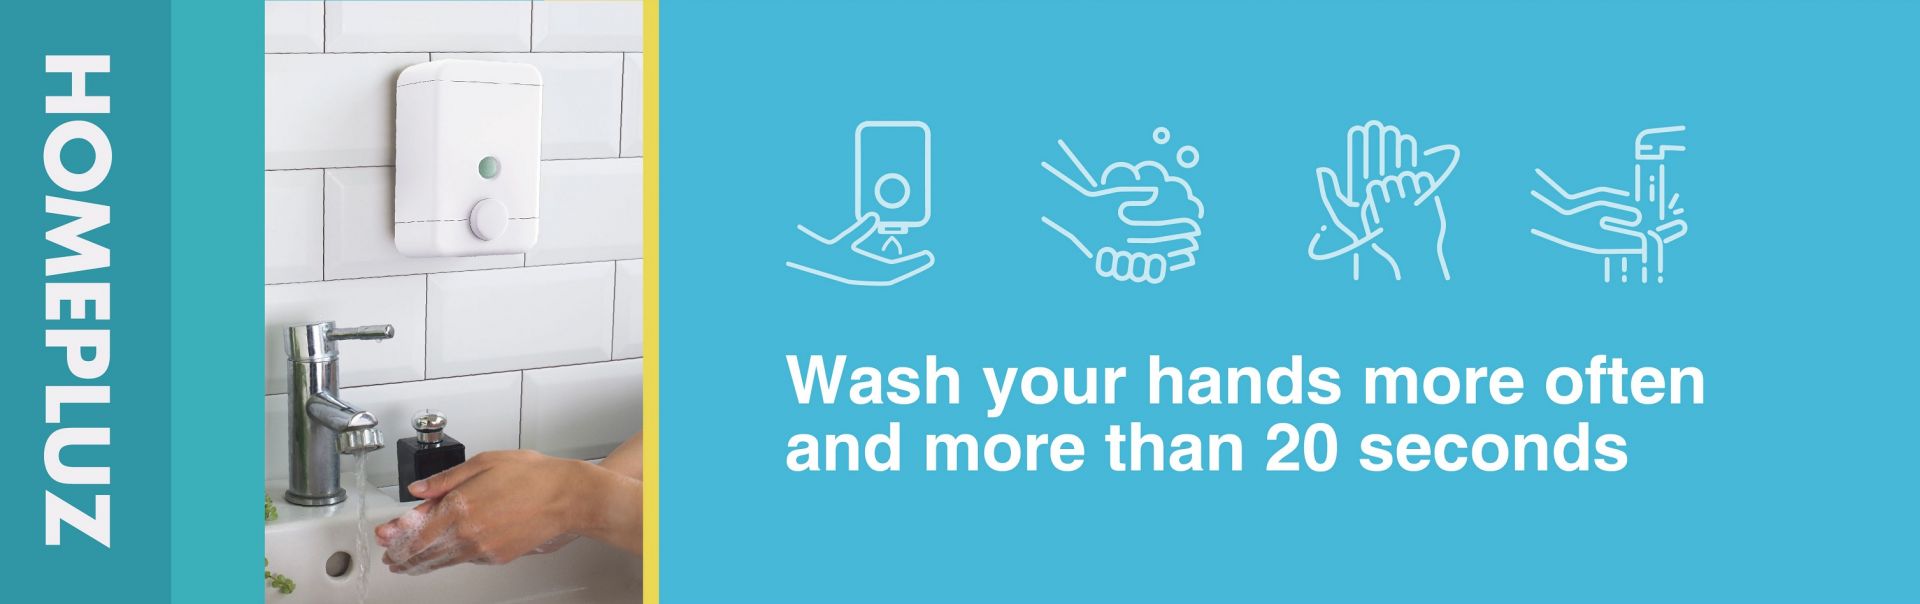 Mencuci tangan untuk menghindari virus